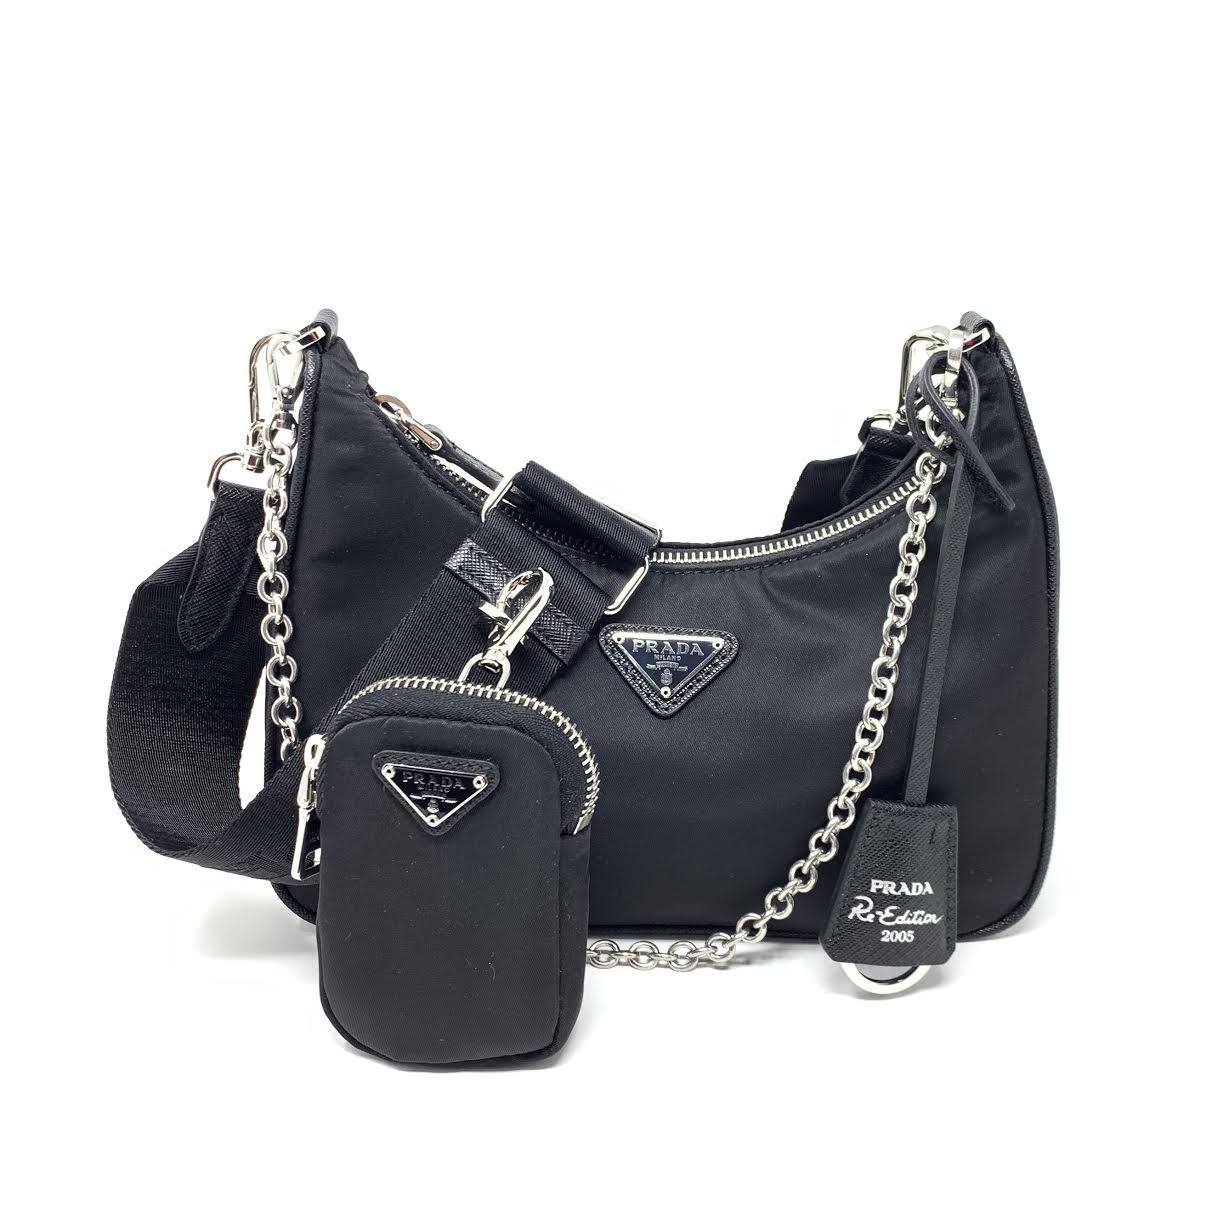 Prada Re-Edition 2005 Camera Bag Tessuto with Saffiano Leather